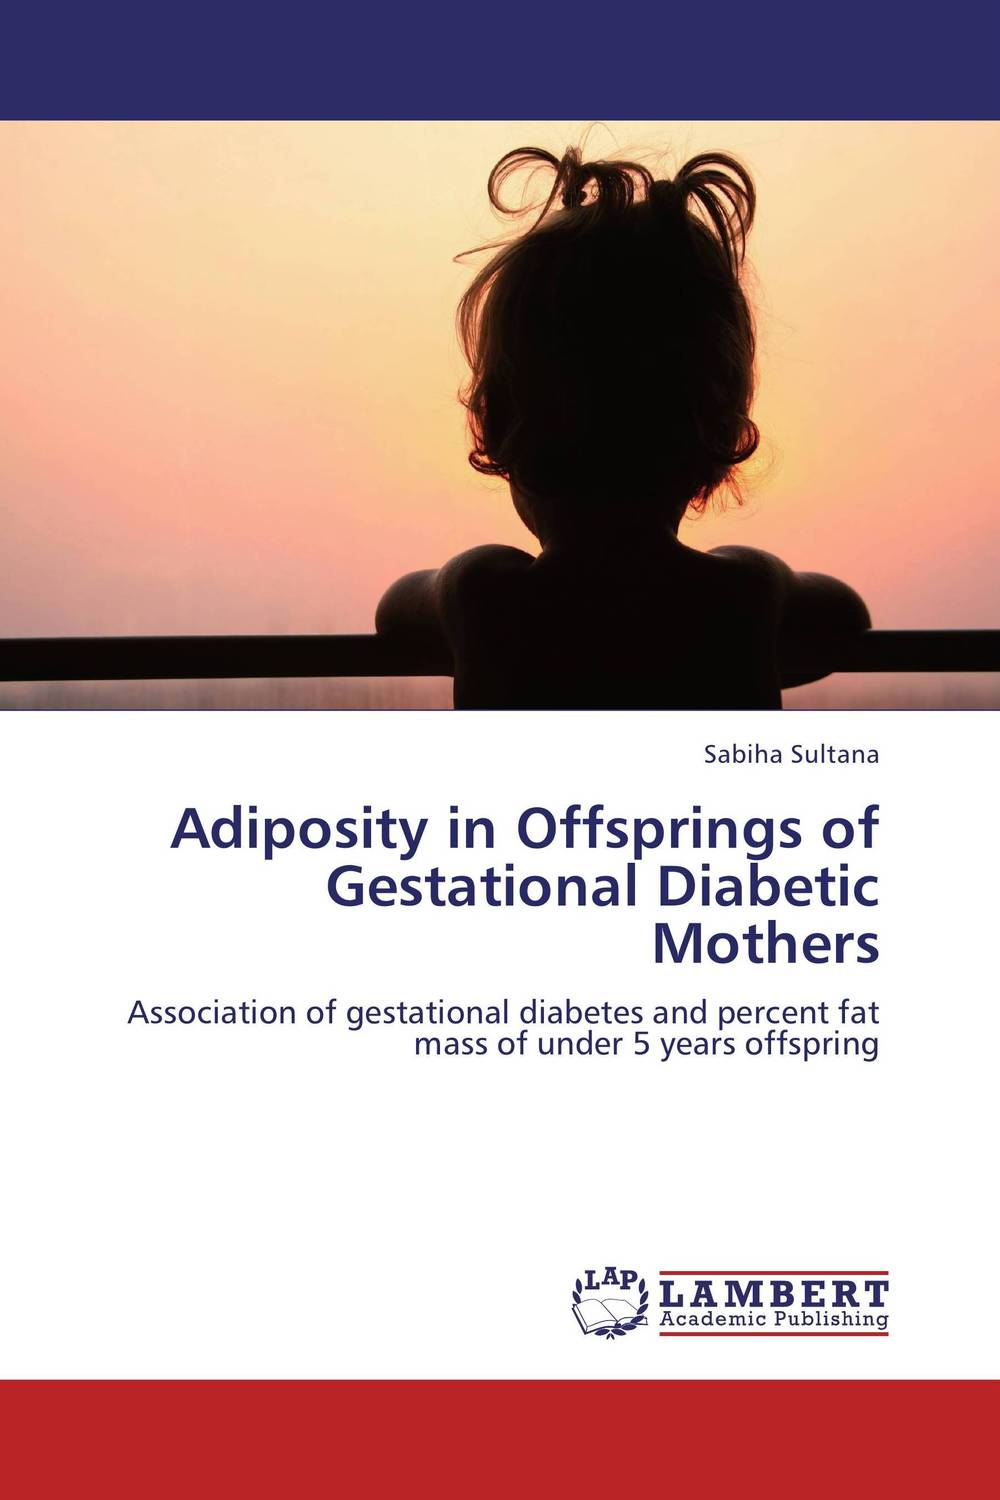 Adiposity in Offsprings of Gestational Diabetic Mothers